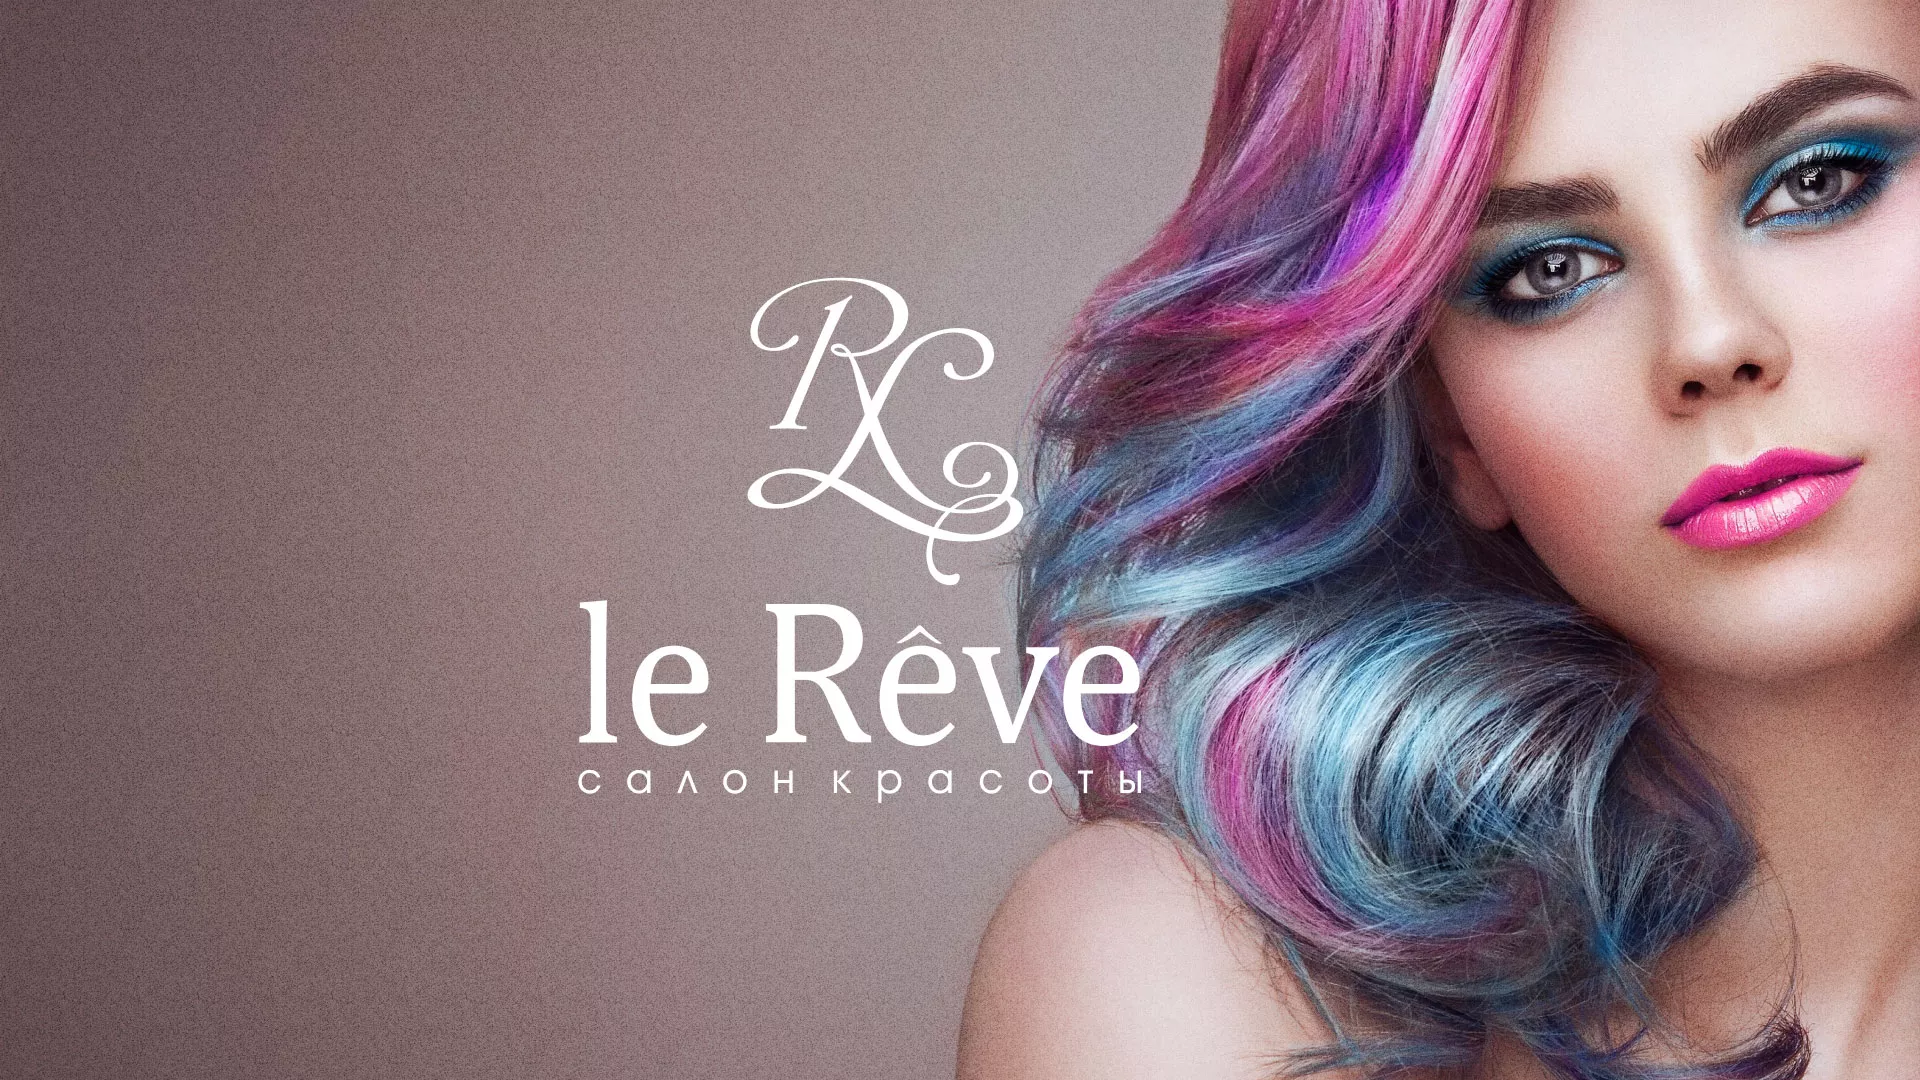 Создание сайта для салона красоты «Le Reve» в Нарткале